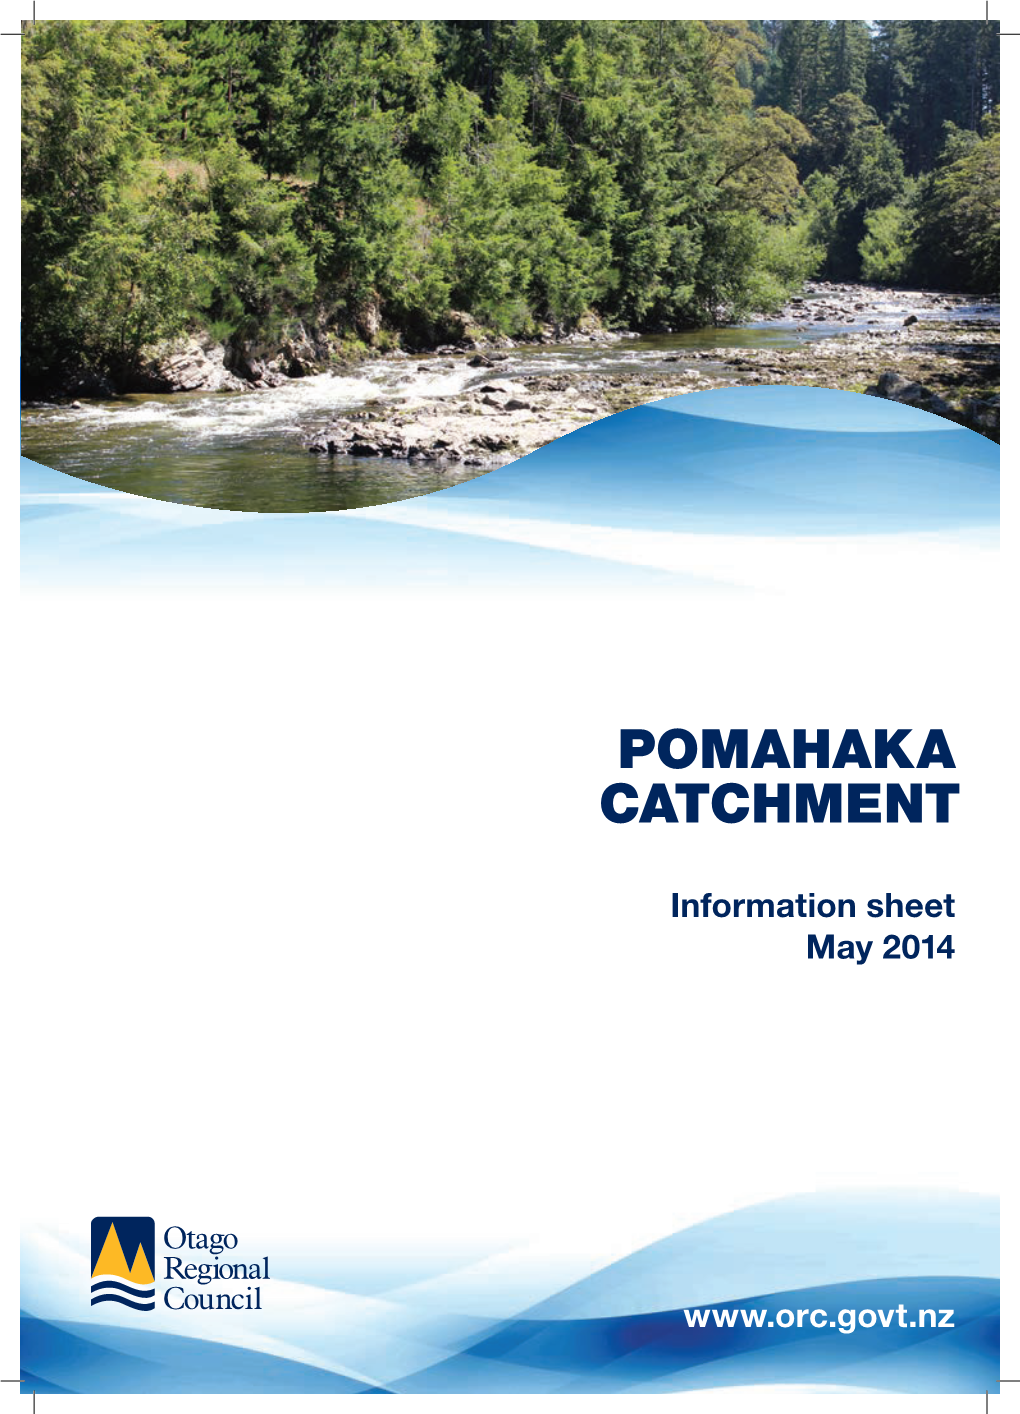 Pomahaka Catchment